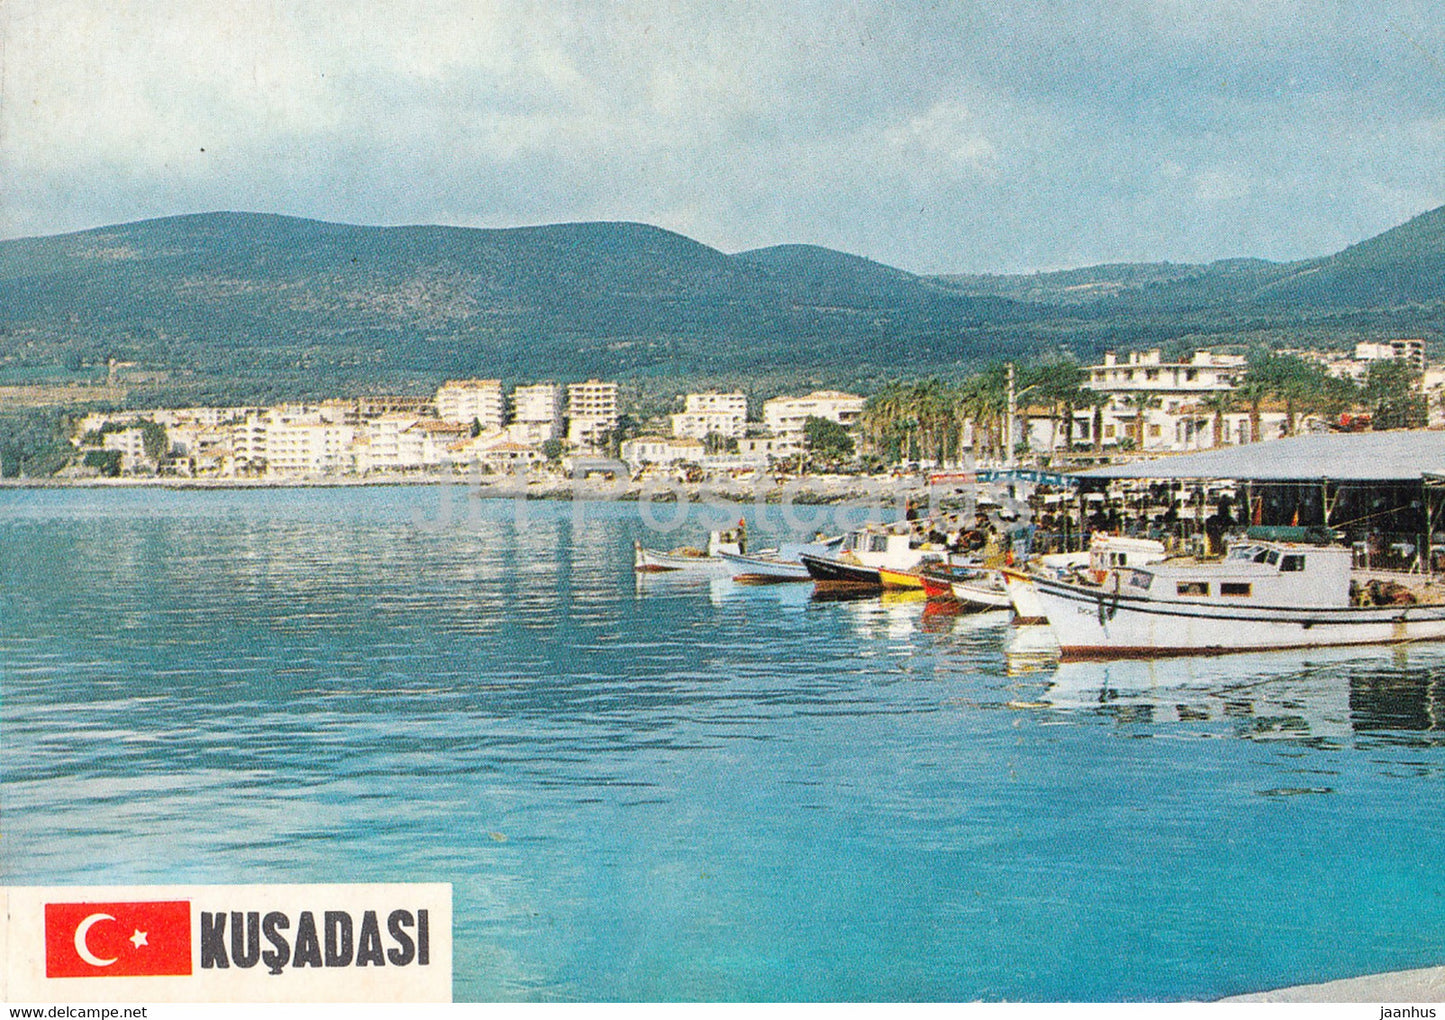 Kusadasi - port - boat - 1985 - Turkey - used - JH Postcards